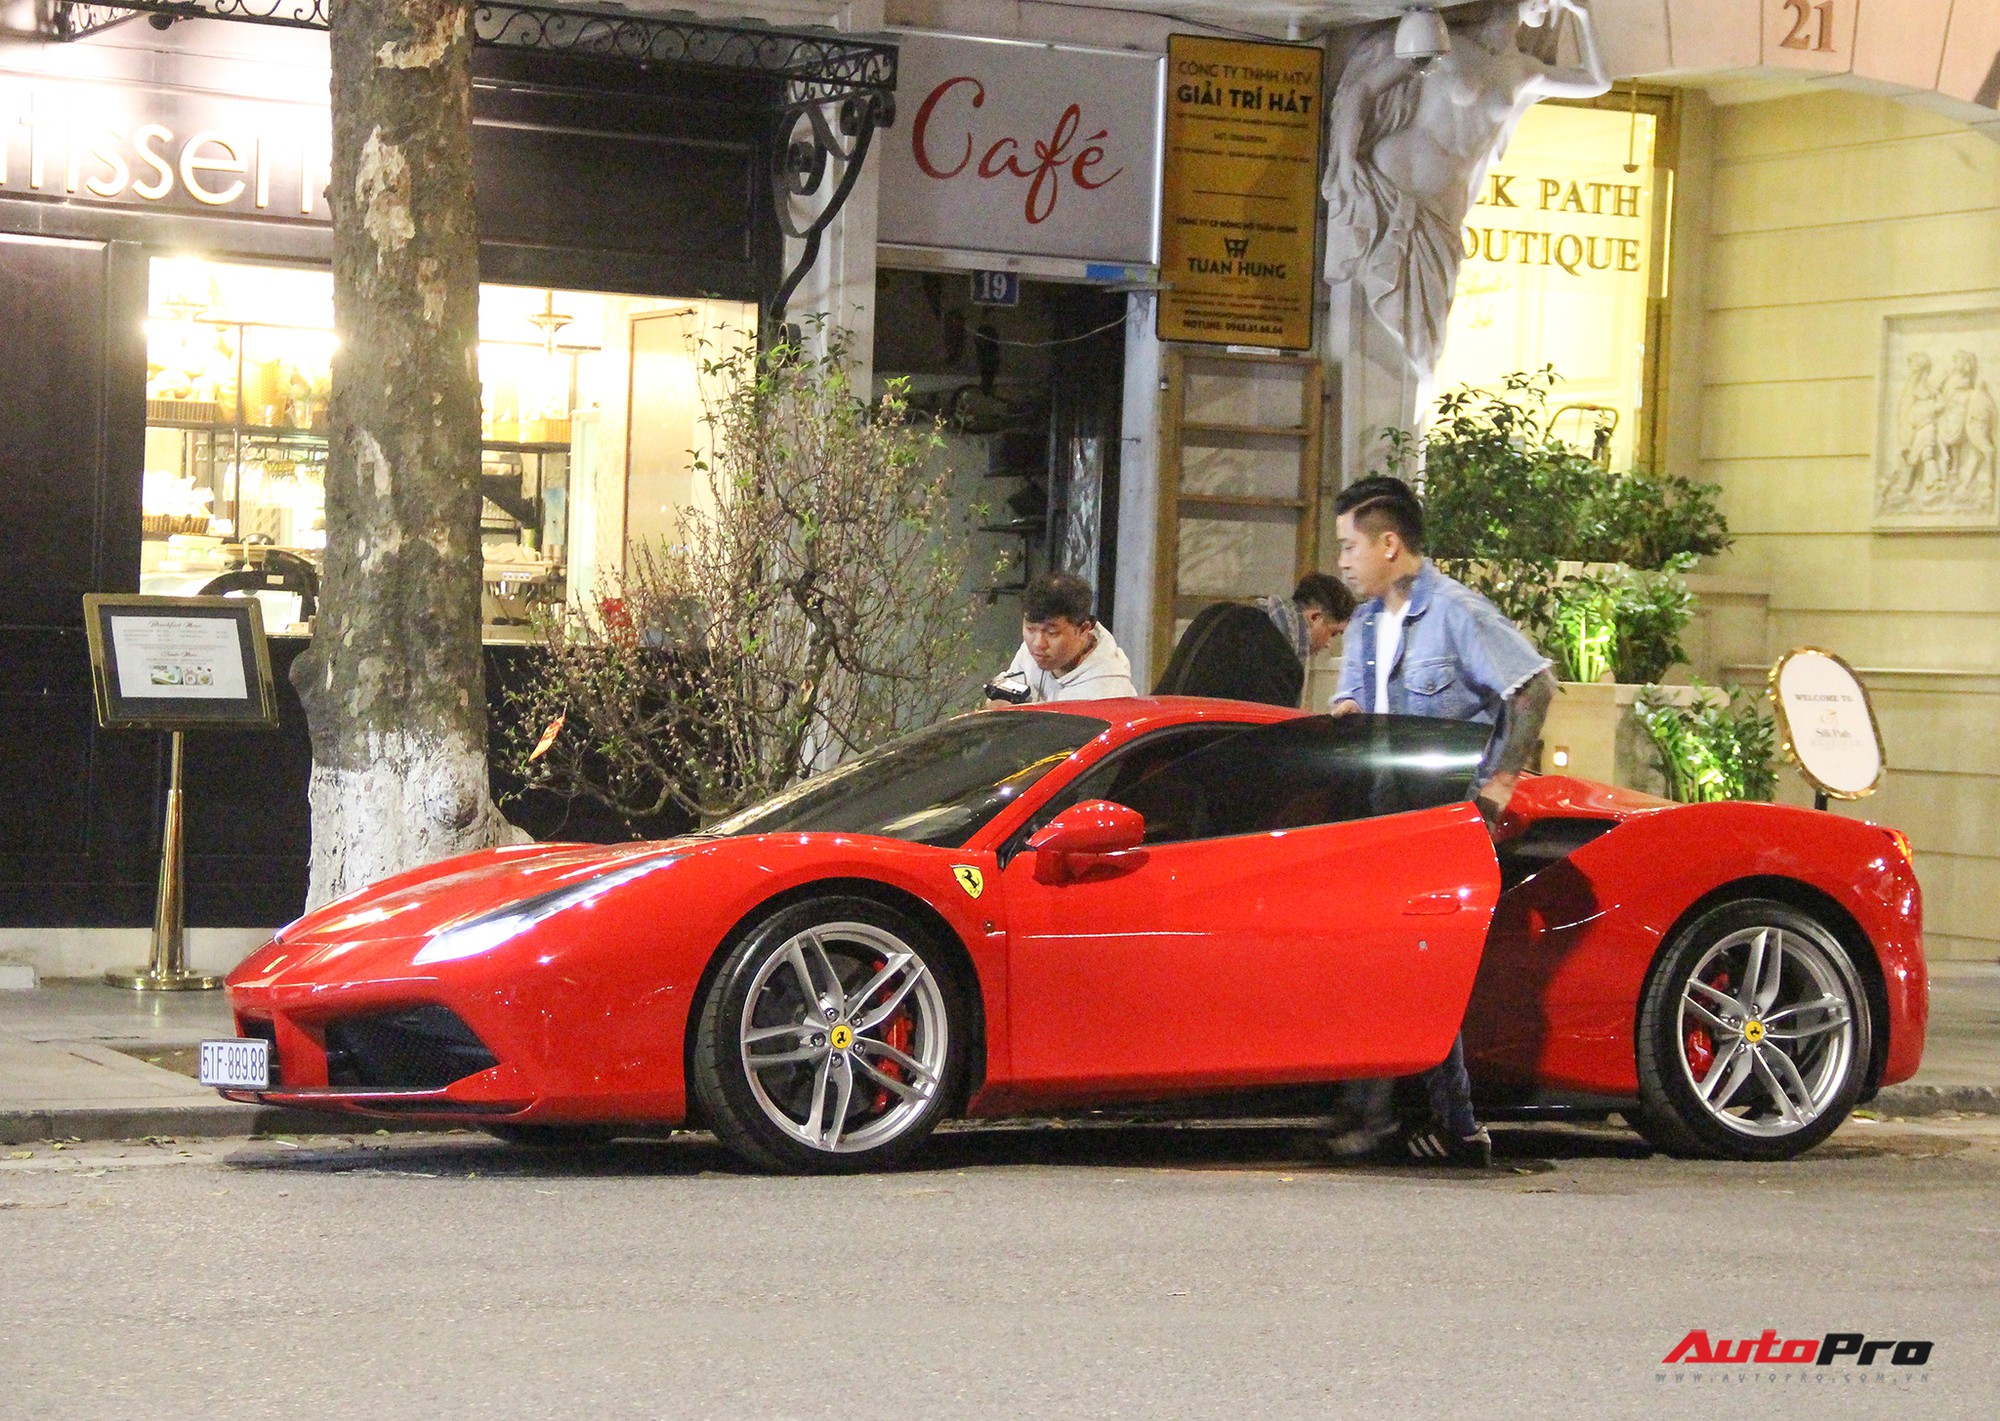 Ca sĩ Tuấn Hưng sở hữu siêu xe Ferrari 16 tỷ đồng